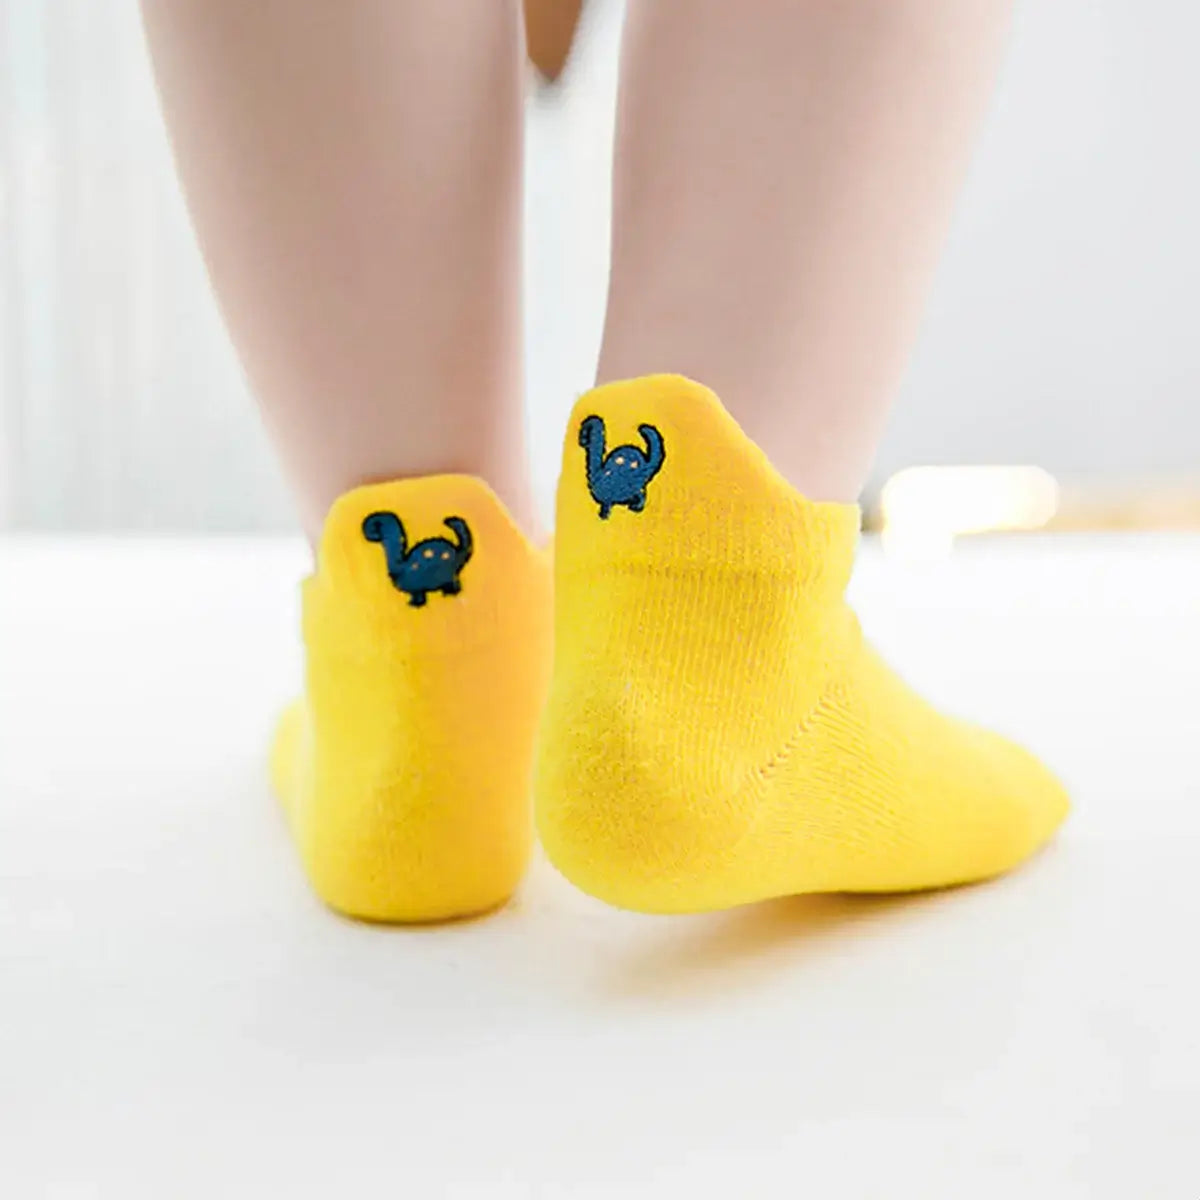 Chaussettes jaune en coton à motif dinosaure pour enfants | Chaussettes confortables et douces | Disponibles en différentes tailles et couleurs | Un cadeau idéal pour les enfants de tous âges